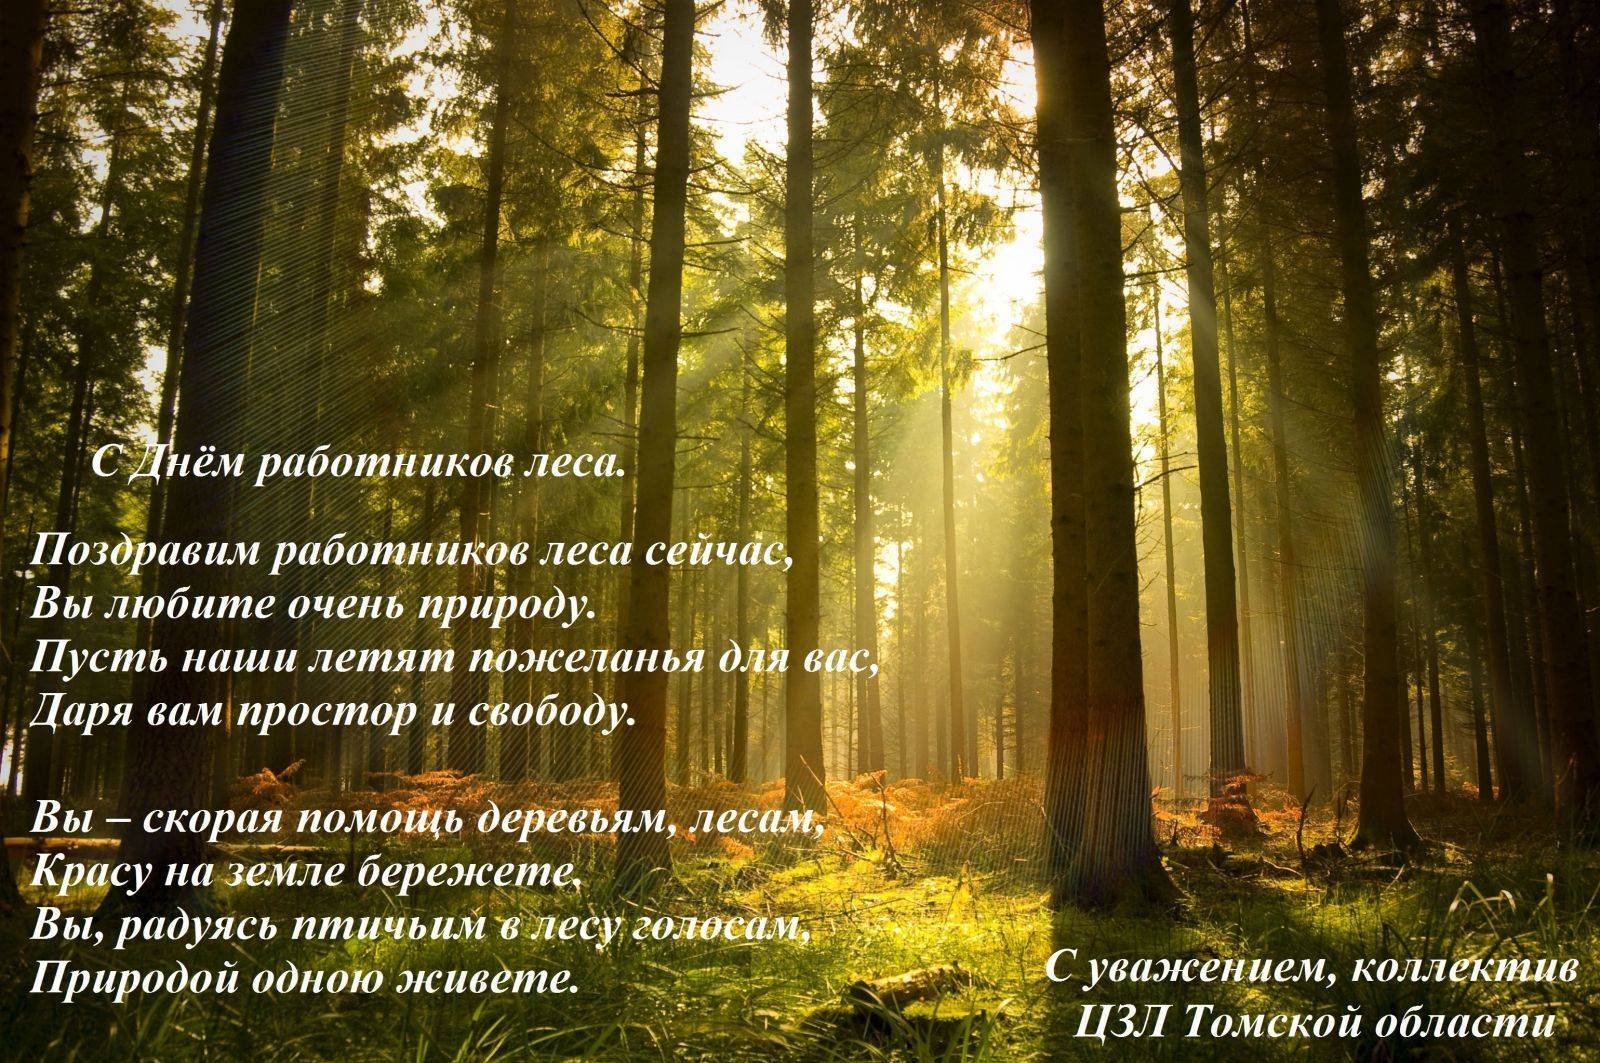 Поэзия о лесе. Поздравление с днем работника леса. Поздравление с днем леса в стихах. Цитаты про лес и природу. С днем леса картинки.